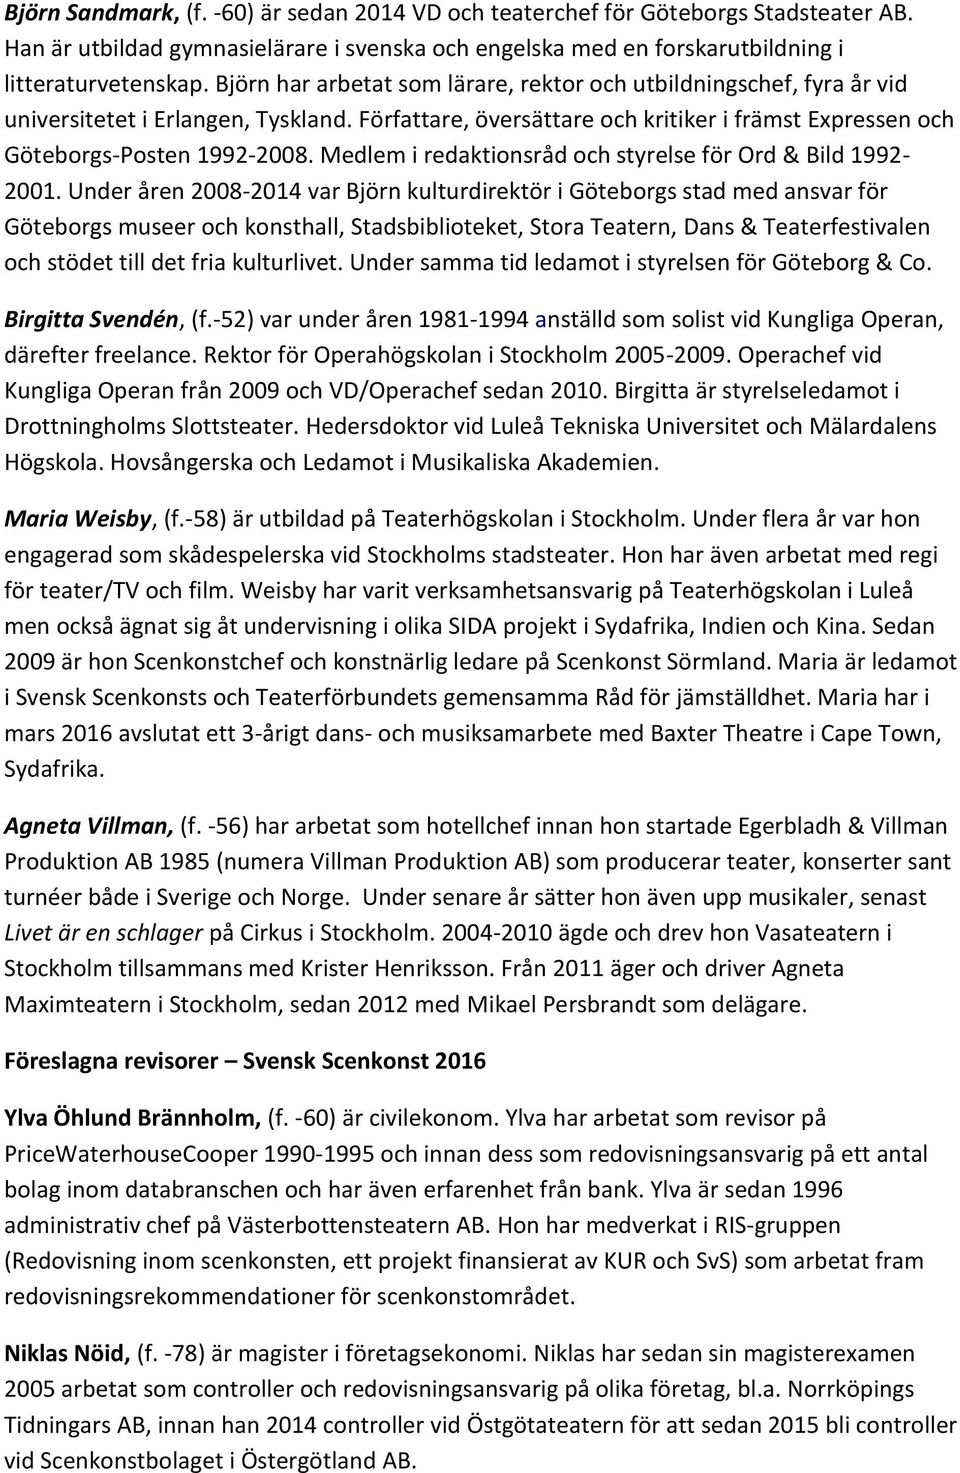 Medlem i redaktionsråd och styrelse för Ord & Bild 1992-2001.